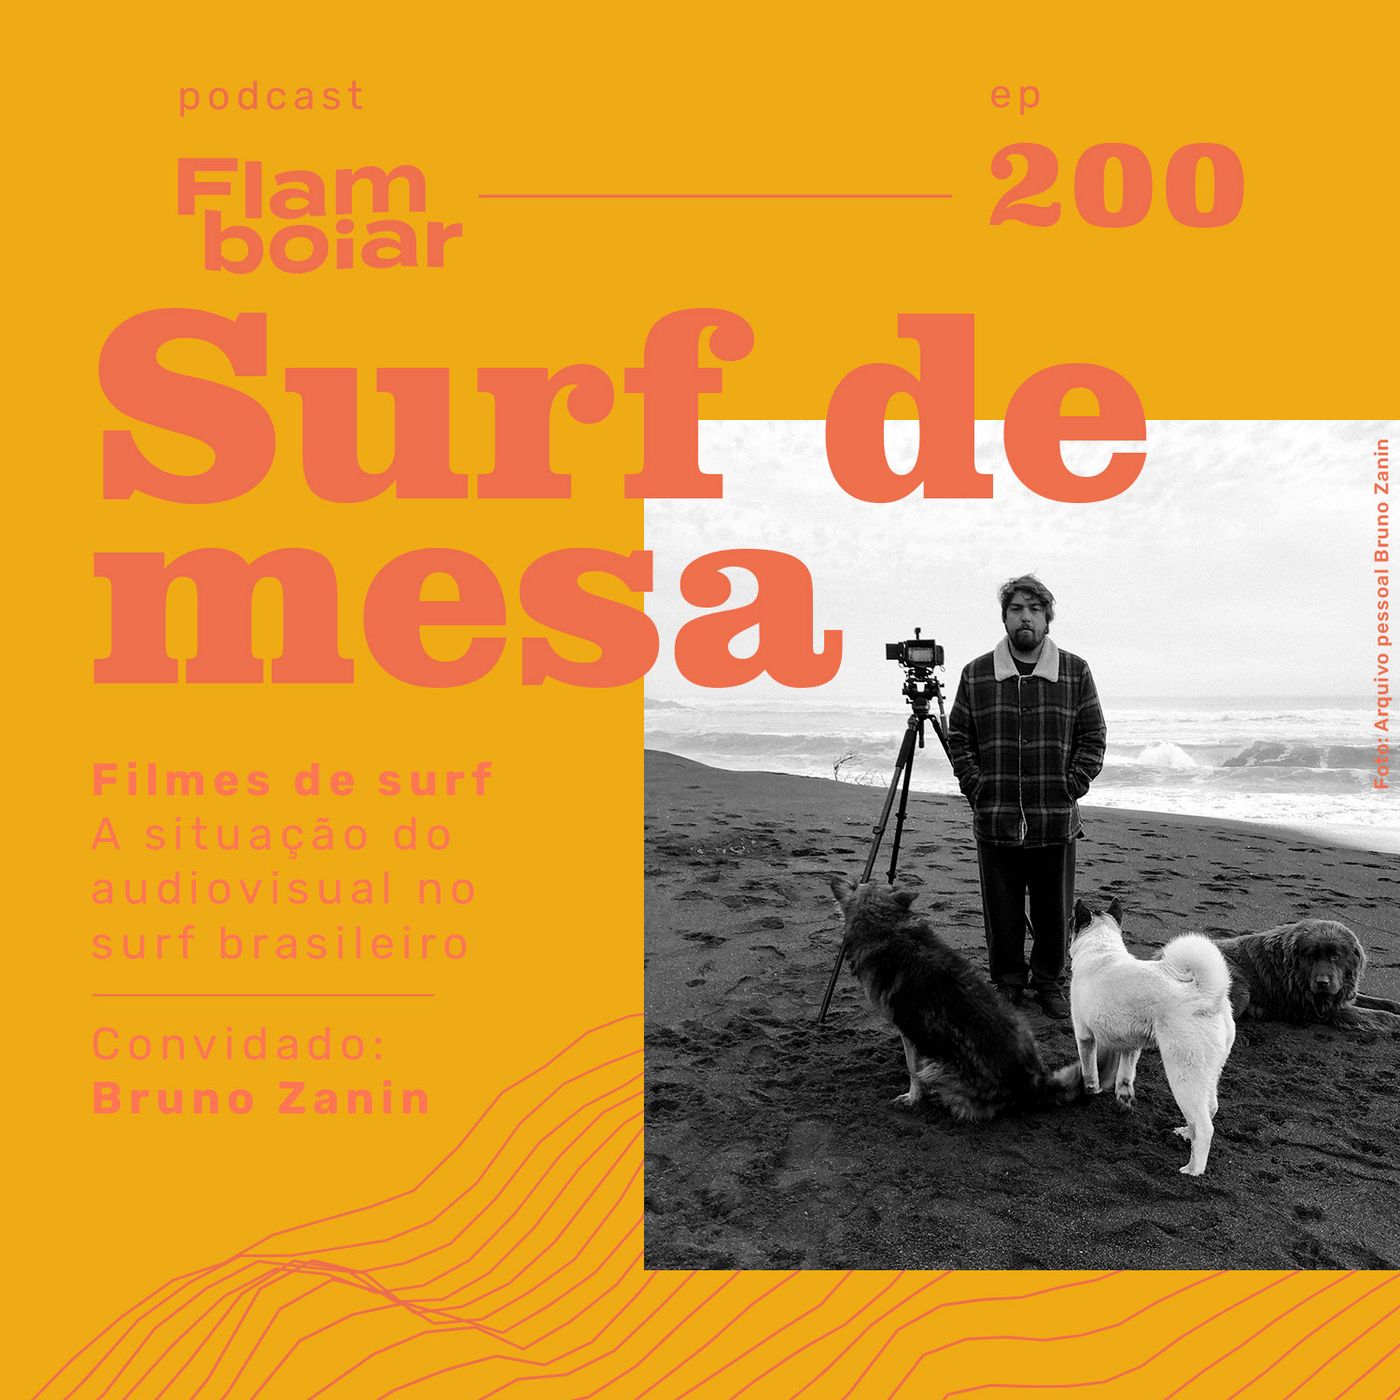 200 - Filmes de surf | A situação do audiovisual no surf brasileiro, com Bruno Zanin